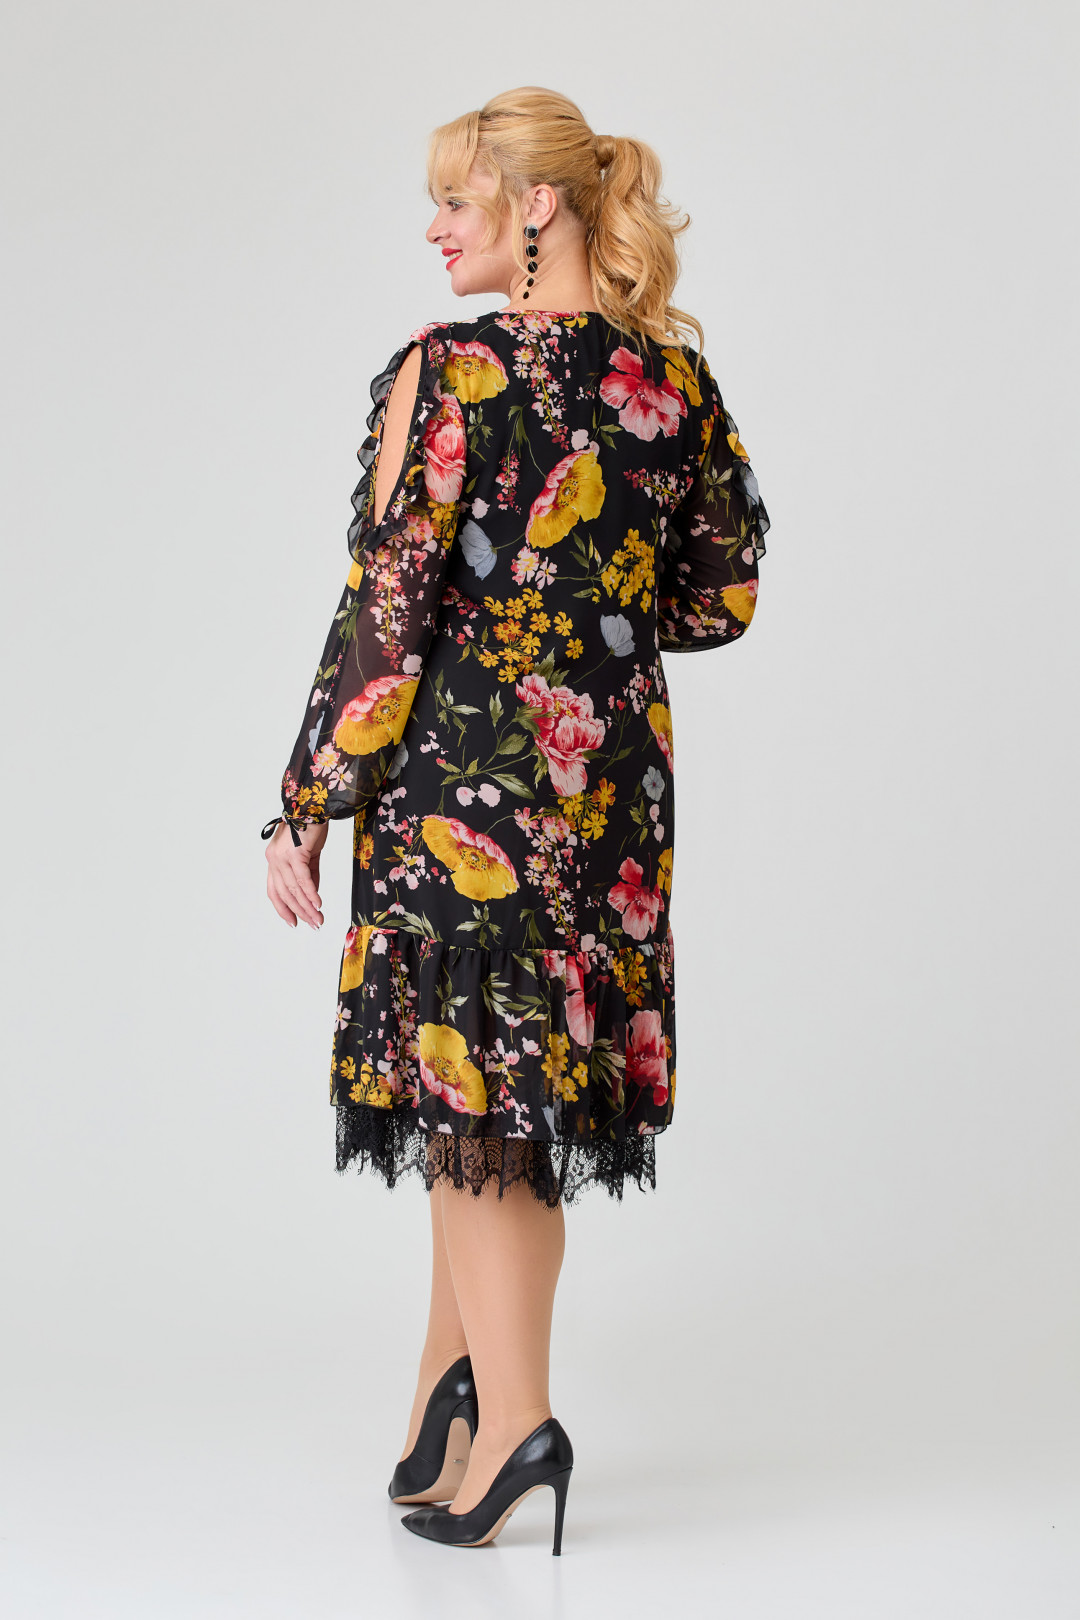 Платье Светлана-Стиль 1877 черный+желтые цветы